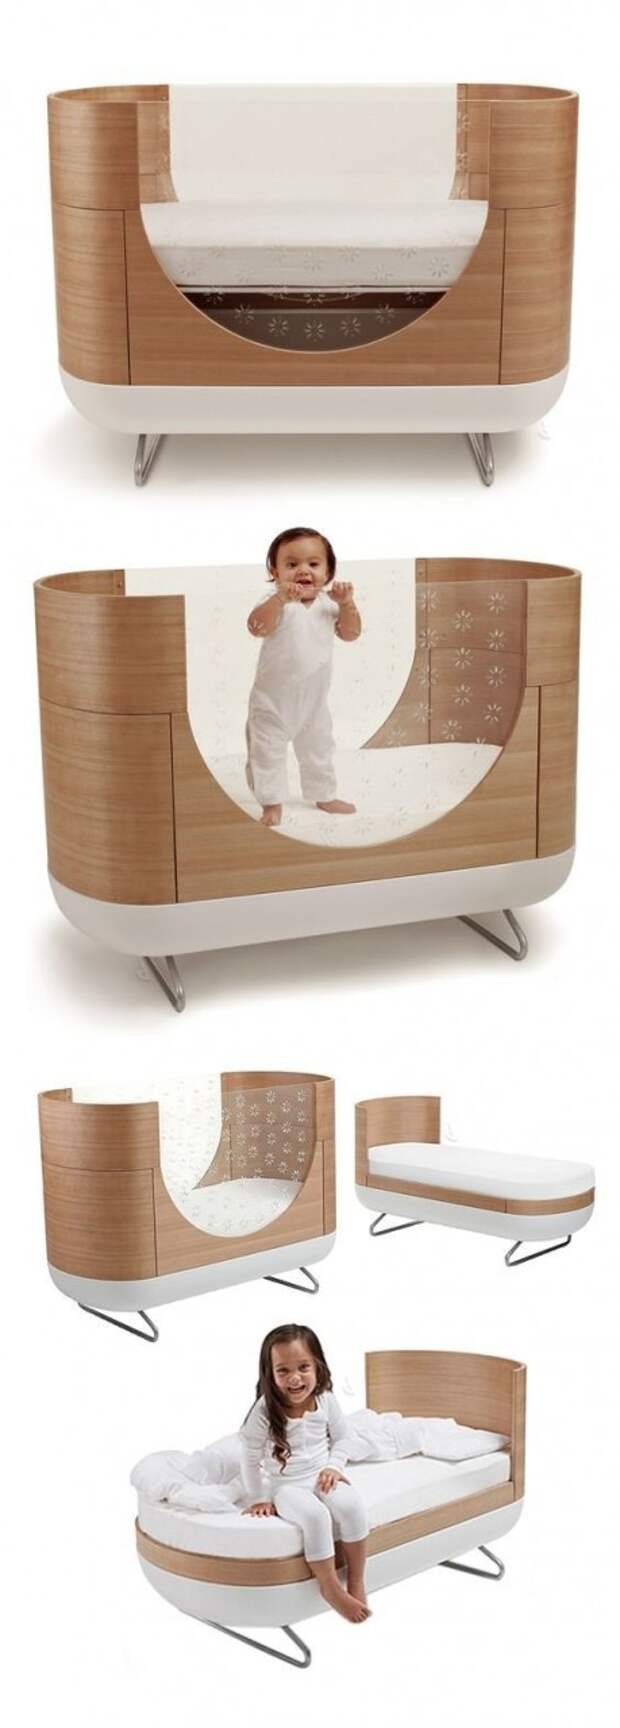 Удобные и простые. Кровать-трансформер для растущего ребенка Фабрика идей, детские, дизайн, идеи, интересное, люльки. кроватки